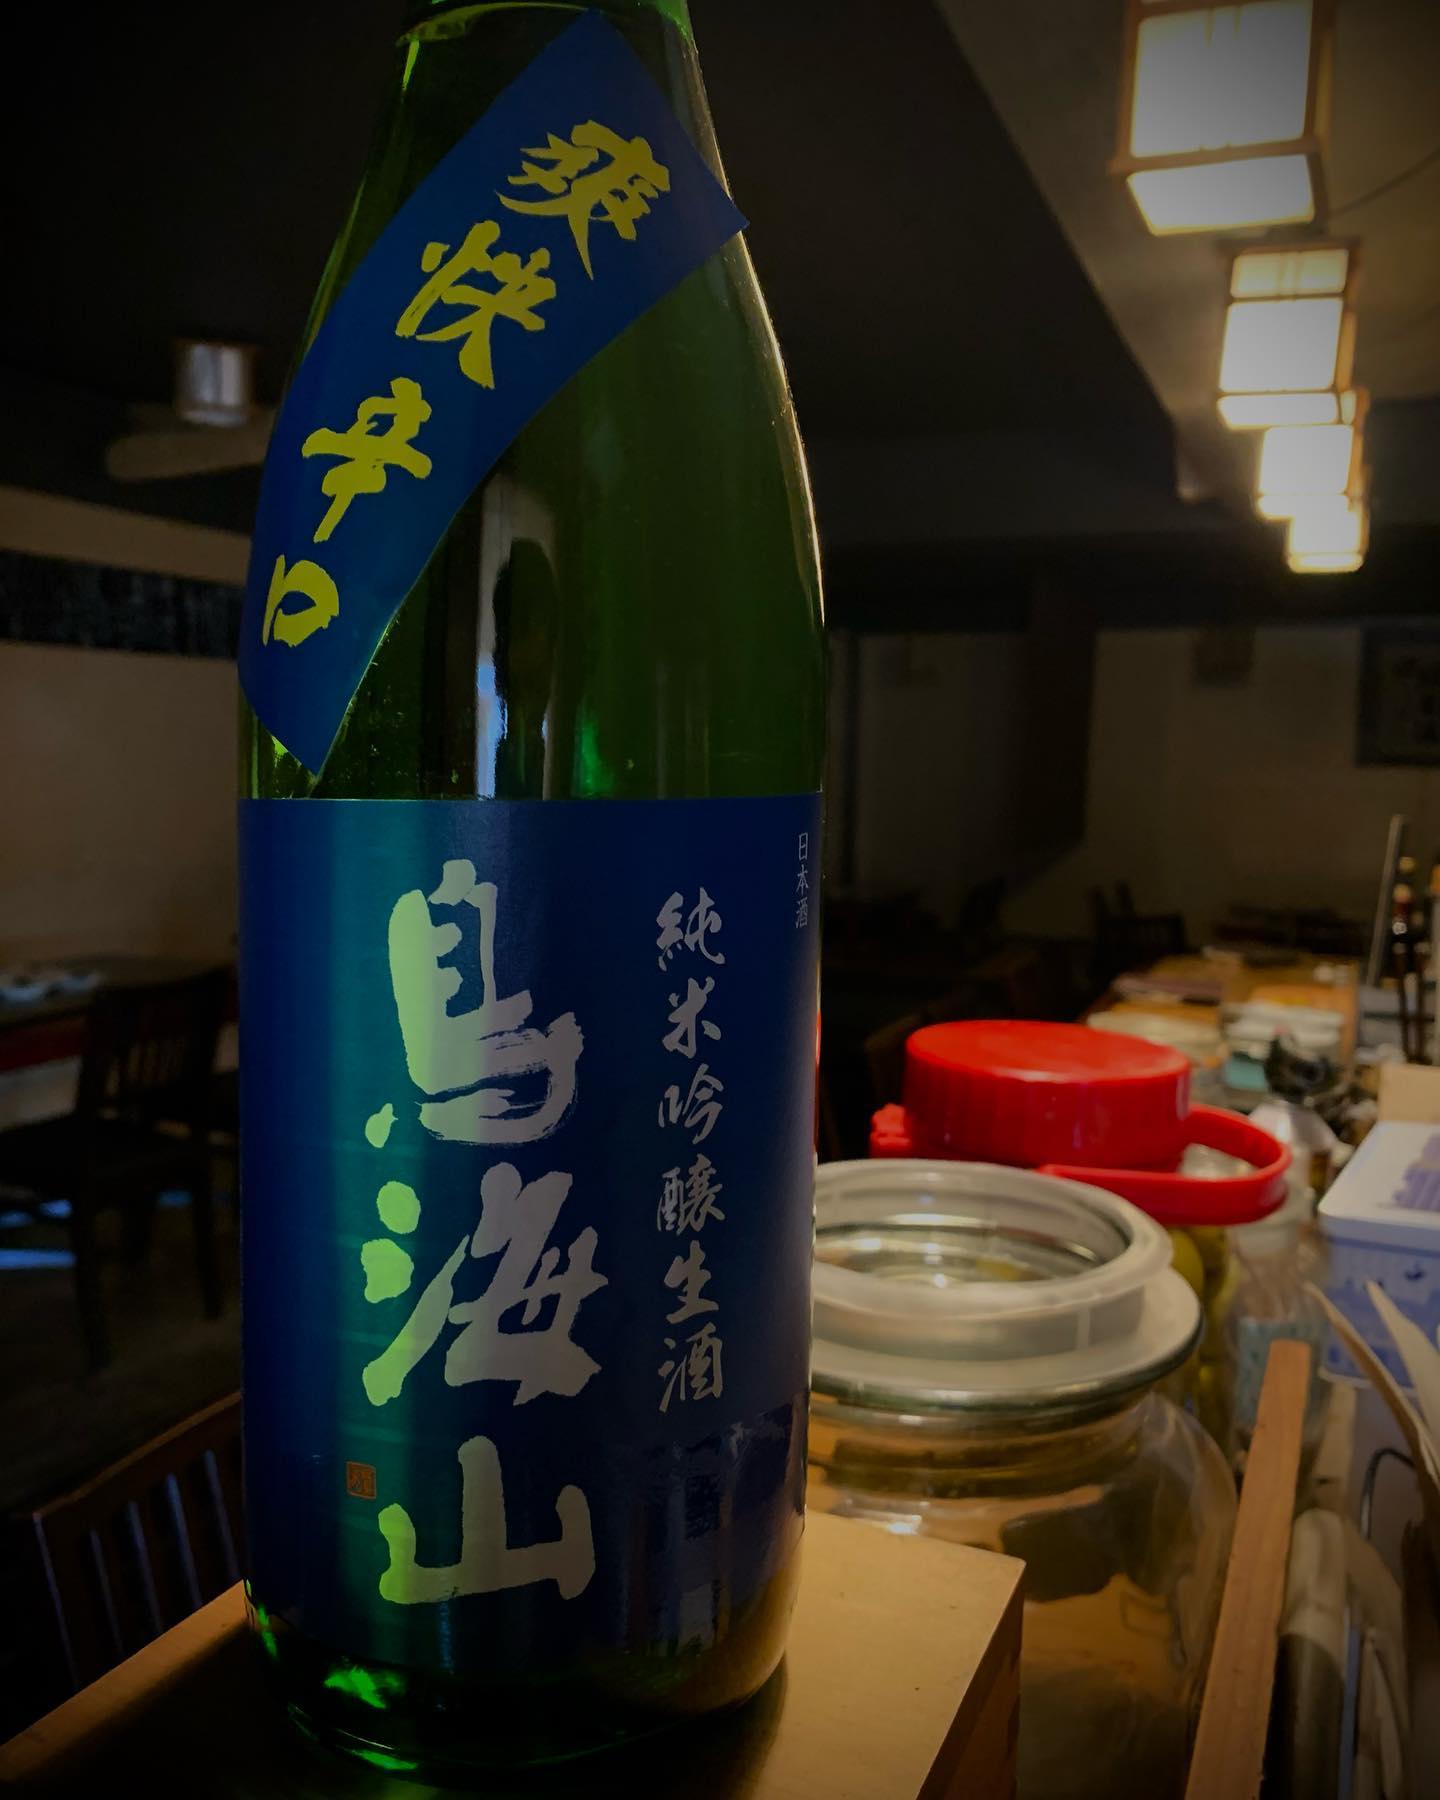 今日の日本酒紹介
「鳥海山」
夏をイメージしたさっぱりな日本酒で、自然水で仕込んだ純米吟醸生原酒。
心地よい喉ごしと柔らかな味わいで
鳥海山の涼しさをご堪能ください。
 #